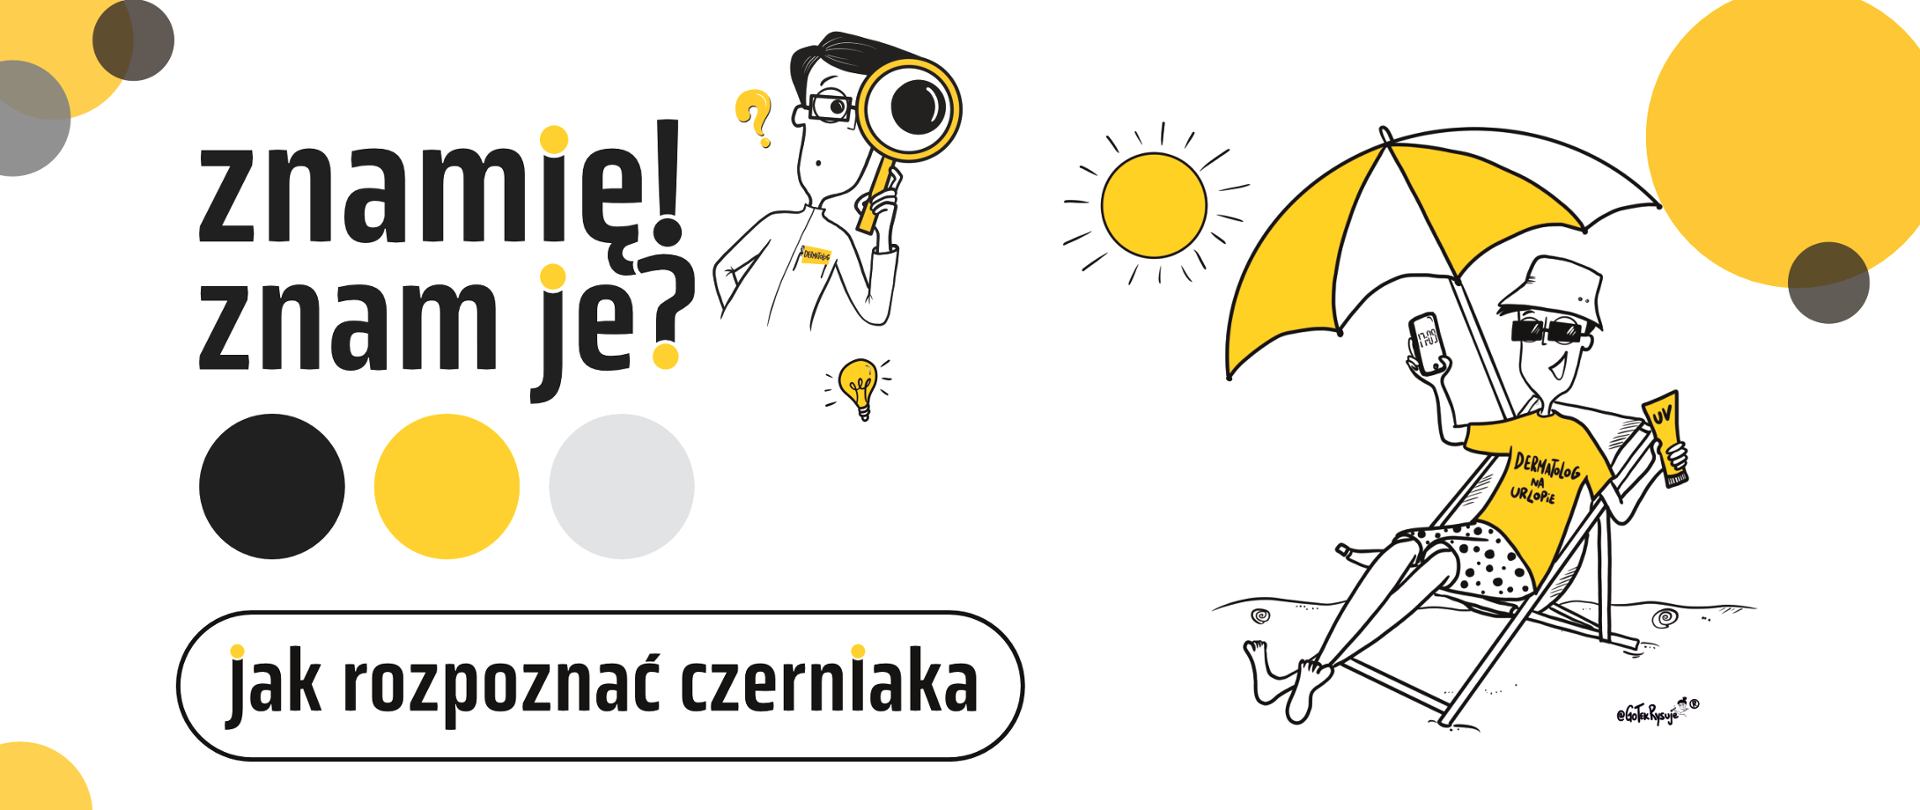 baner do Programu "Znamię! Znam je?" Jak rozpoznać czerniaka? z prawej strony rysunek siedzącej osoby na leżaku pod parasolem